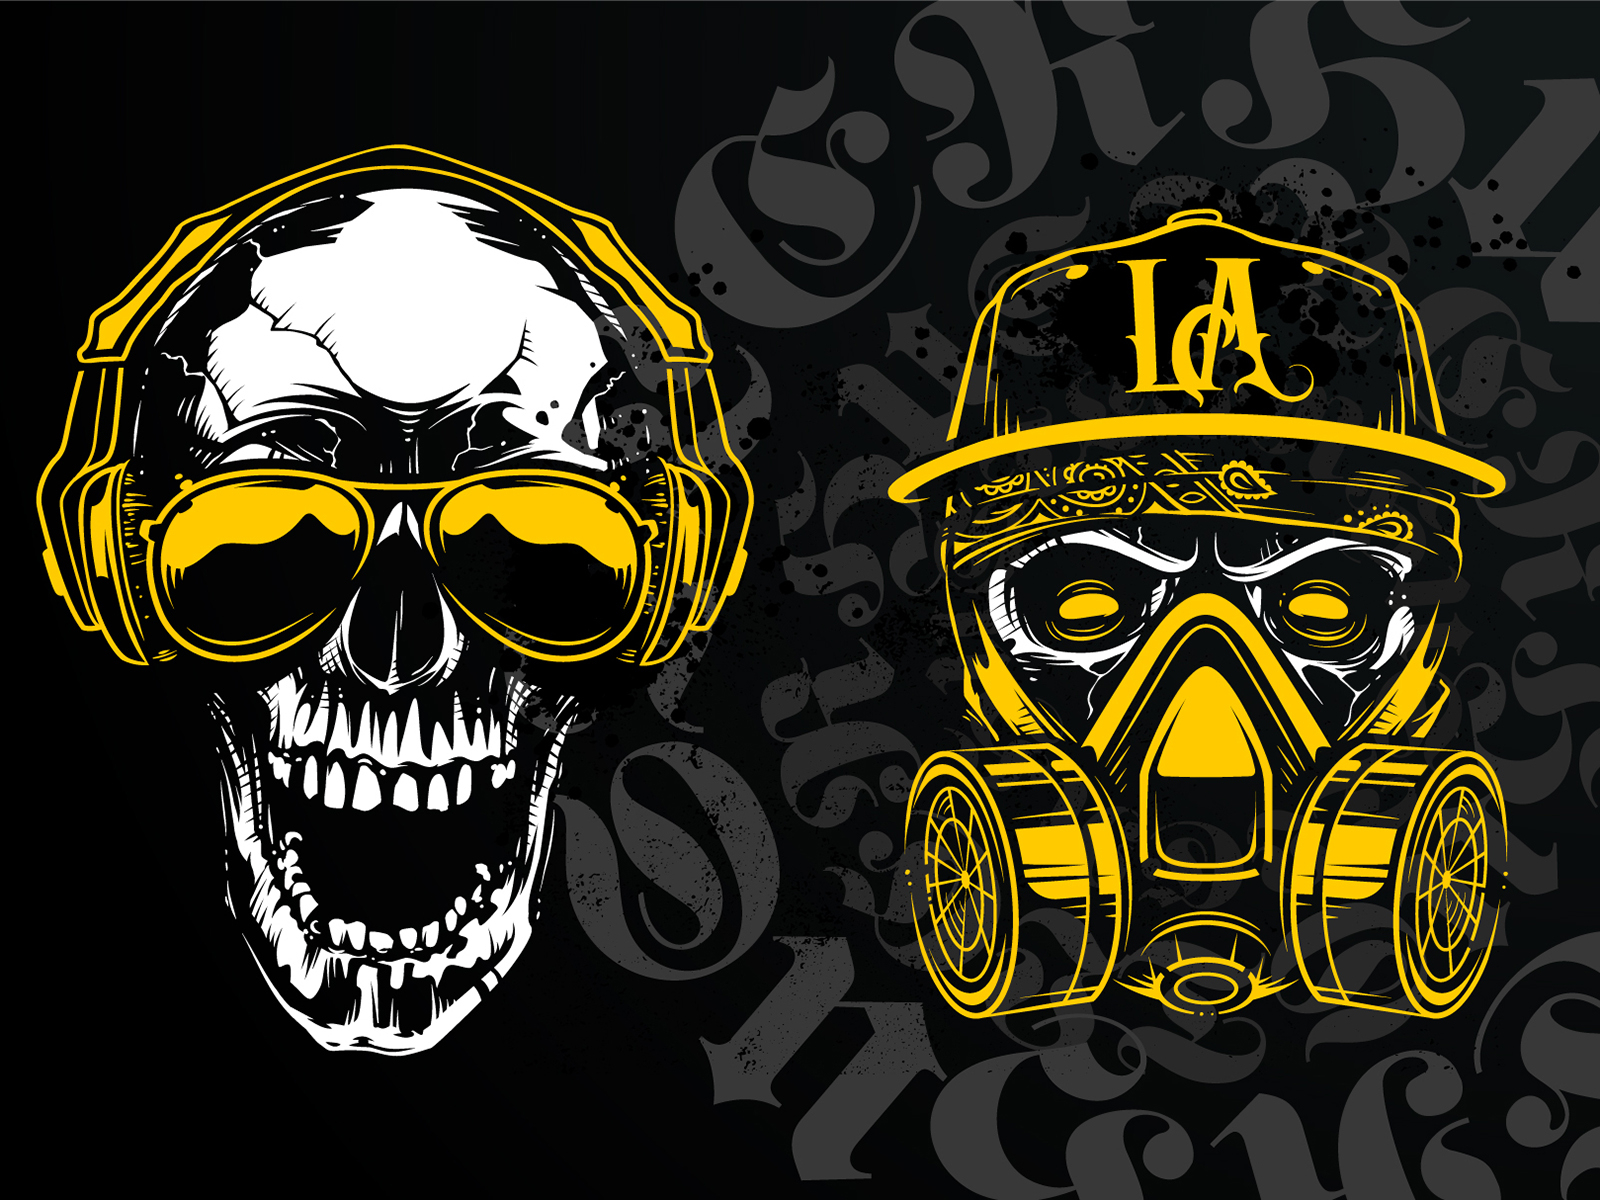 skull gas mask art